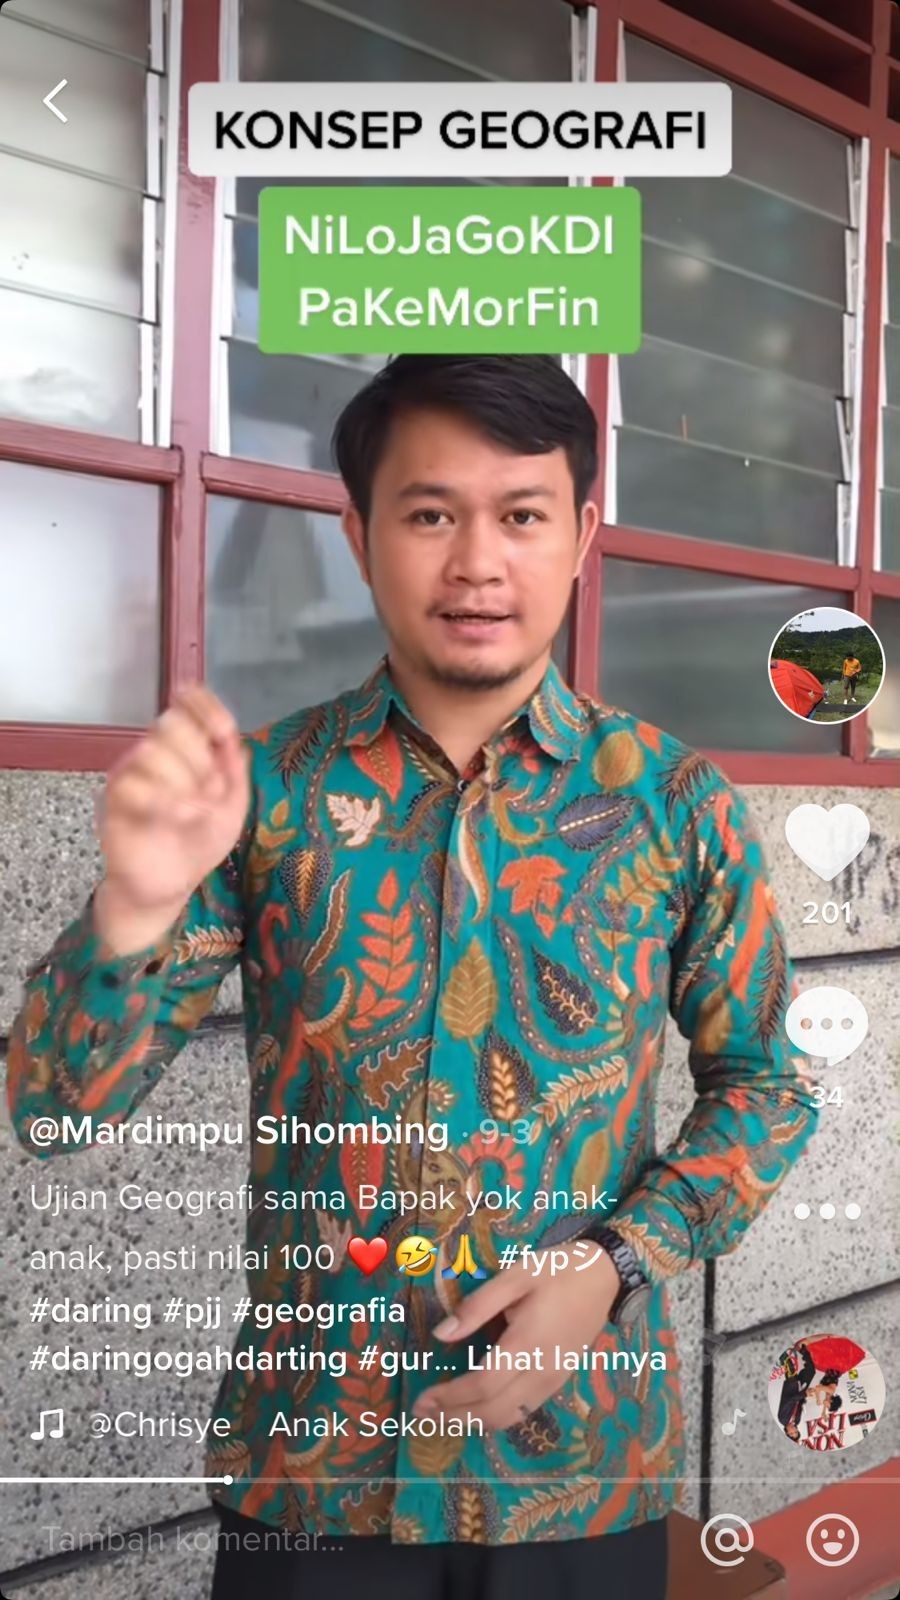 Cerita Mardimpu Sihombing, Mengajar Geografi dengan Aplikasi Tiktok